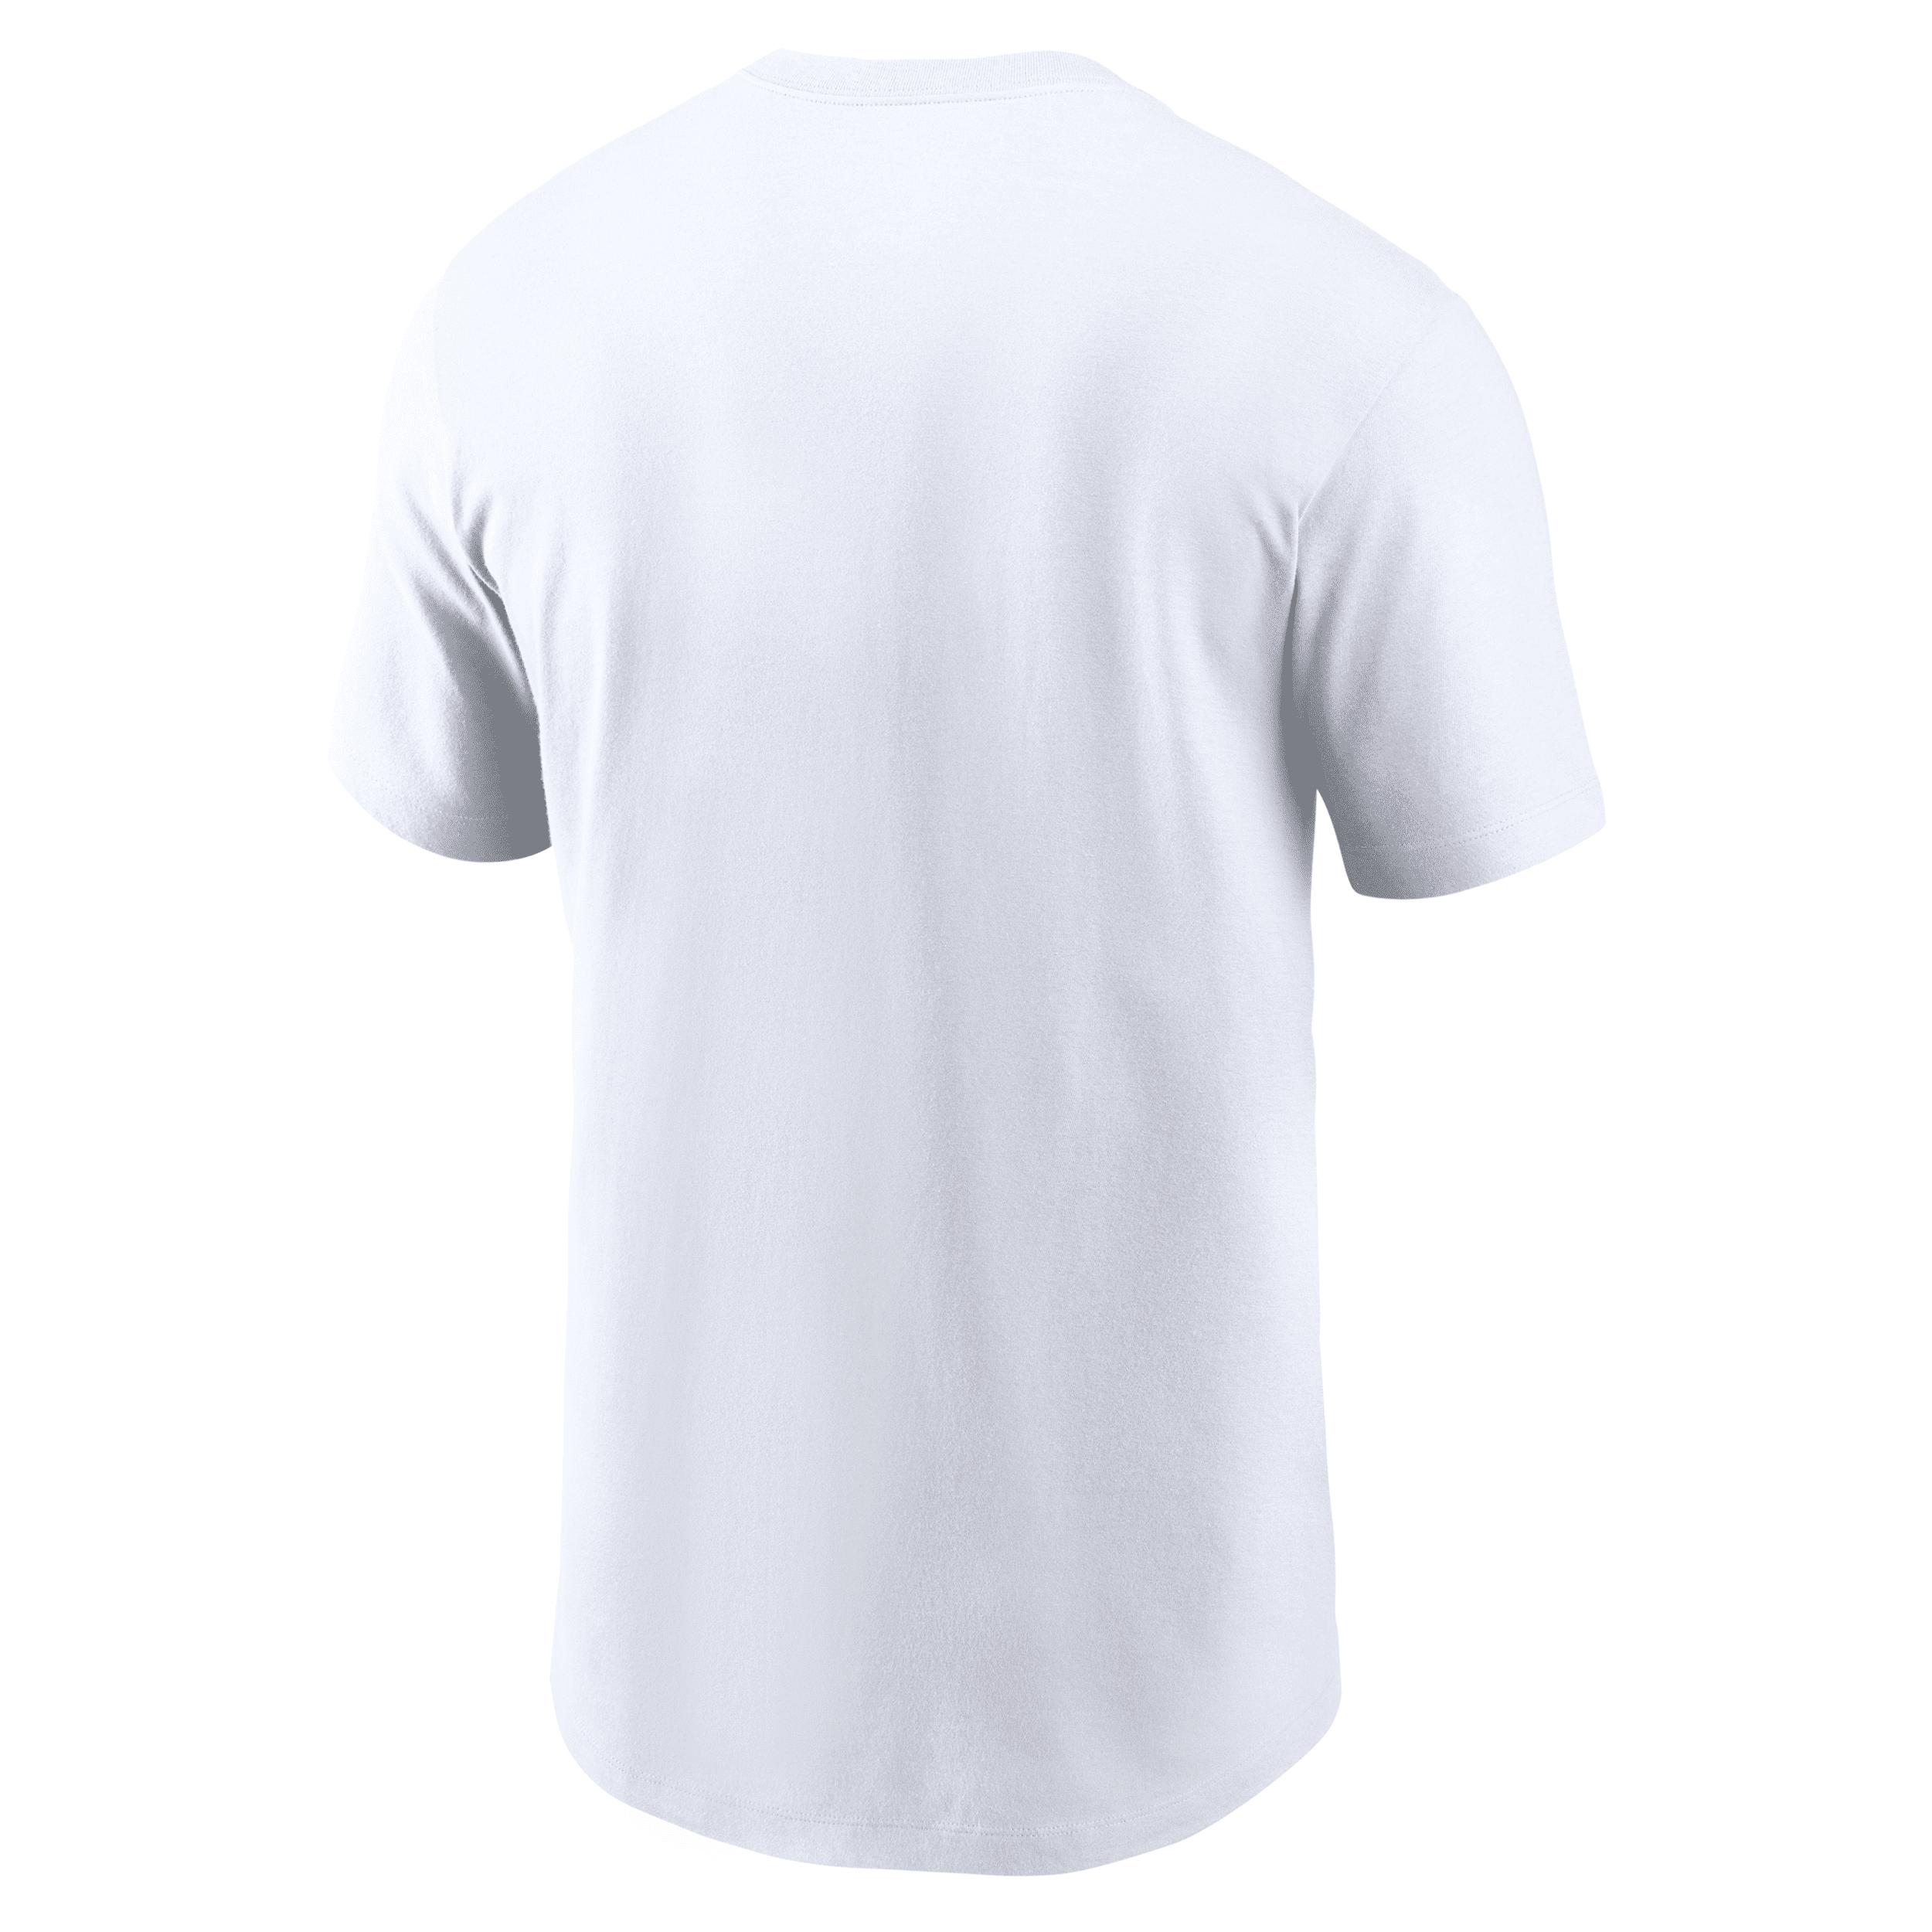 Nike Super Bowl Lvii (nfl Kansas City Chiefs) T-shirt In White, for Men